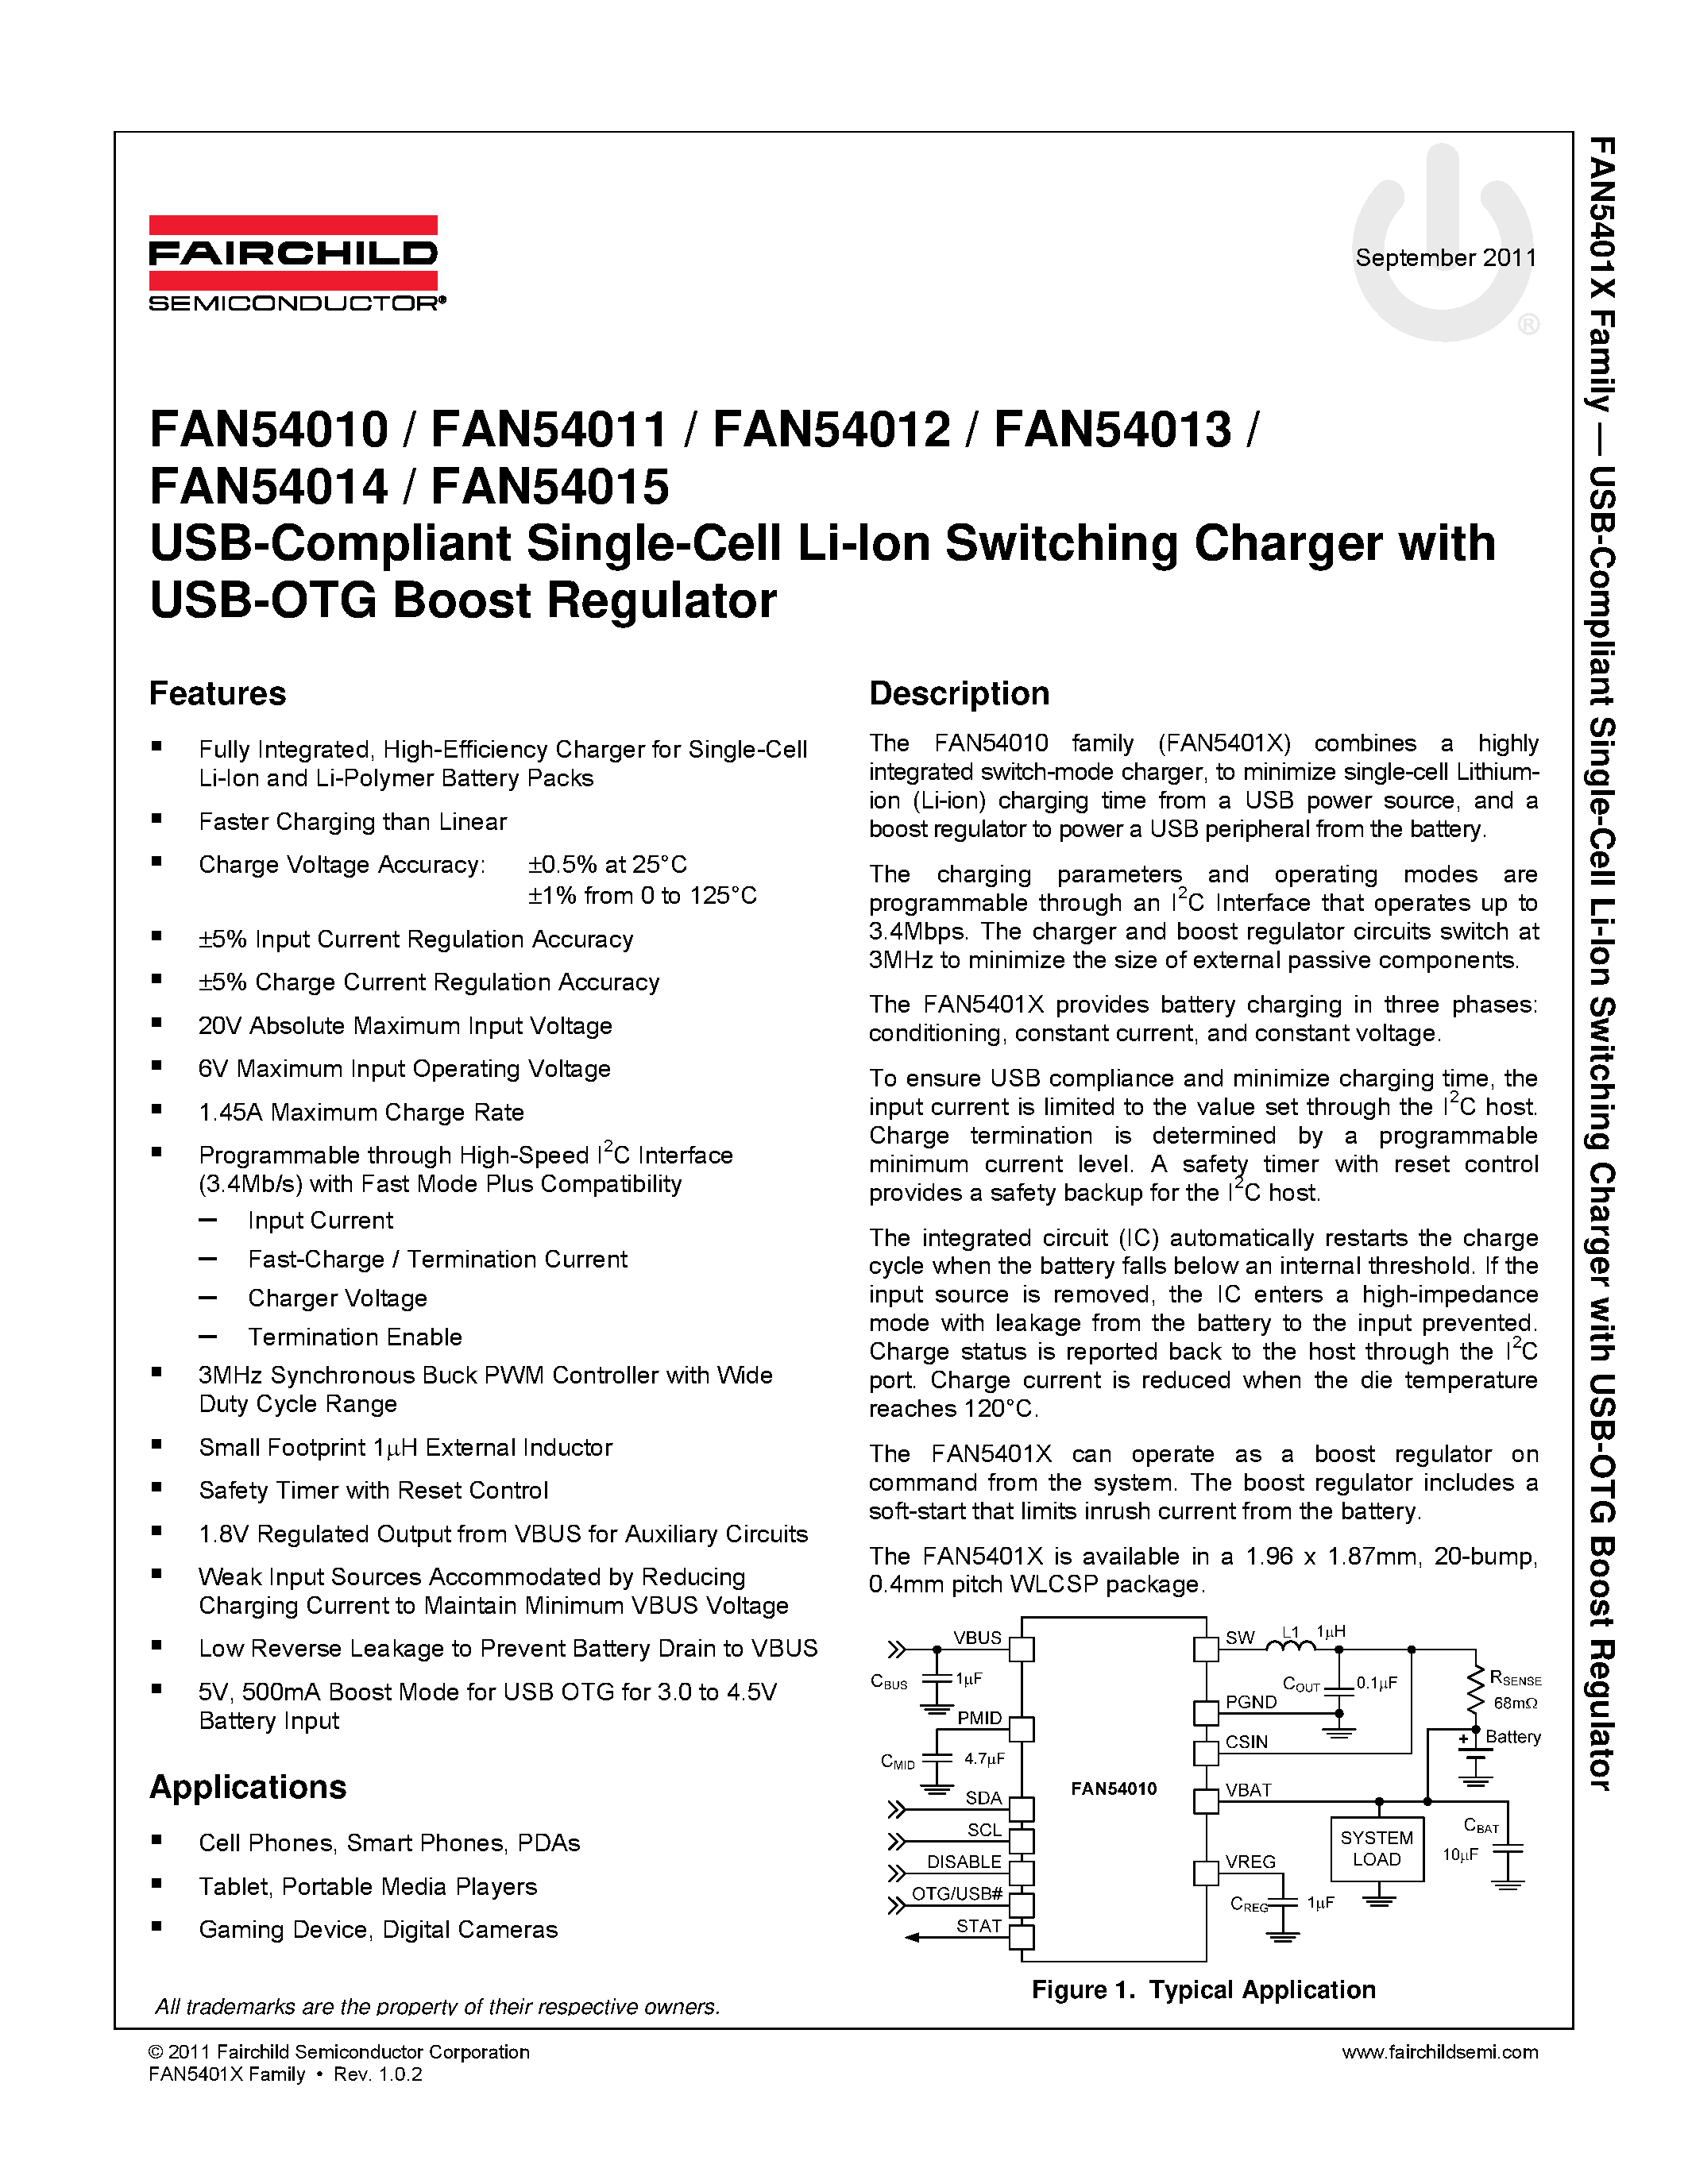 Datasheet FAN54010 - (FAN54010 - FAN54015) USB-Compliant Single Cell Li-Ion Switching Charger page 1